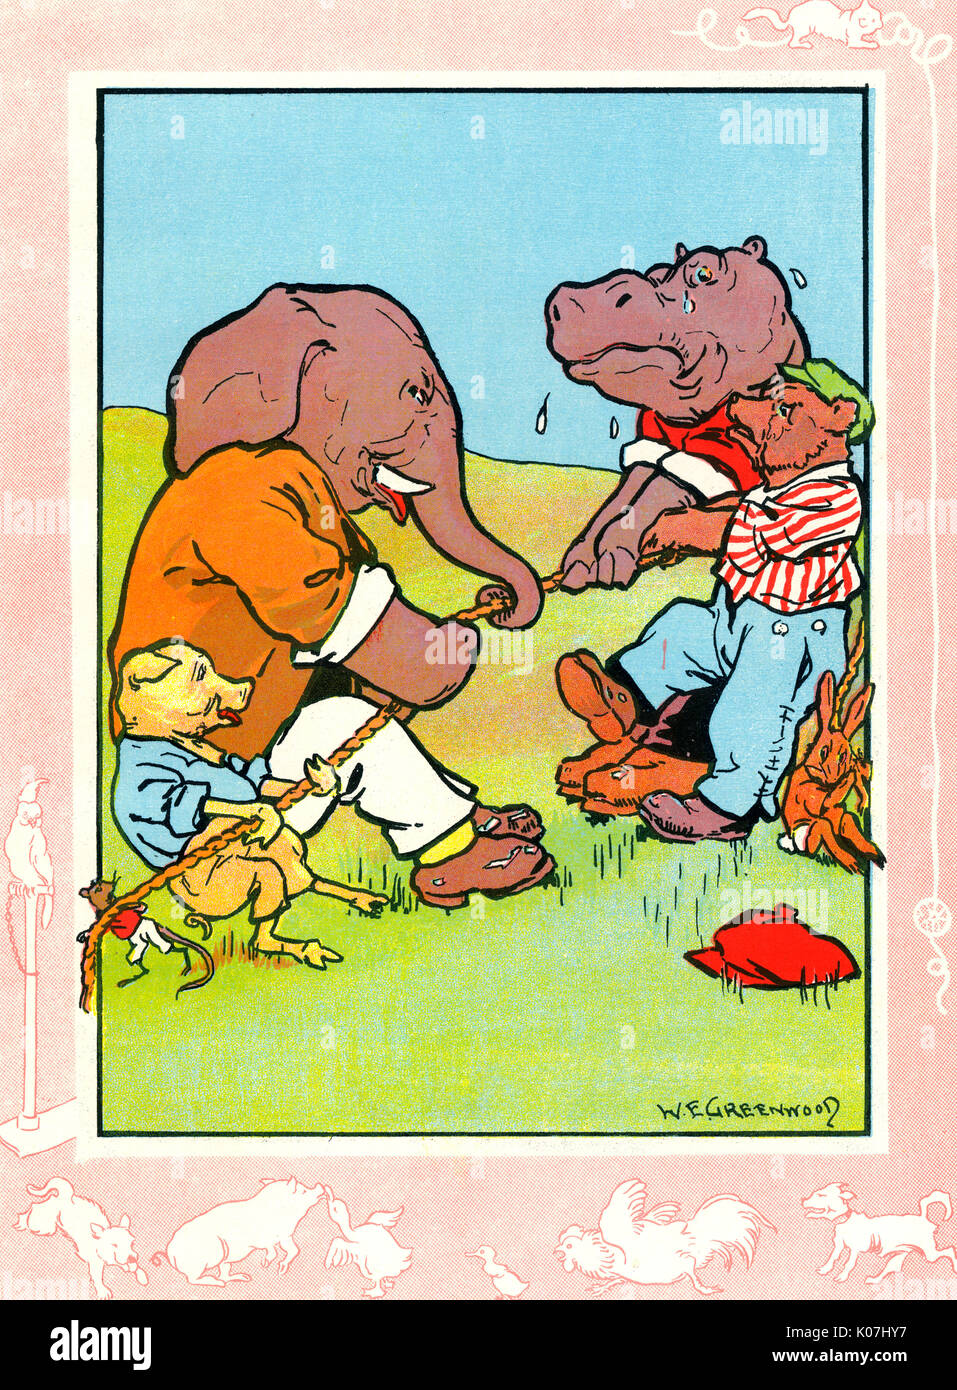 Ein Elefant Ein Schwein Und Eine Maus Haben Ein Tauziehen Spiel Mit Einem Hippo Ein Bar Und Ein Hase Datum Ca 1933 Stockfotografie Alamy